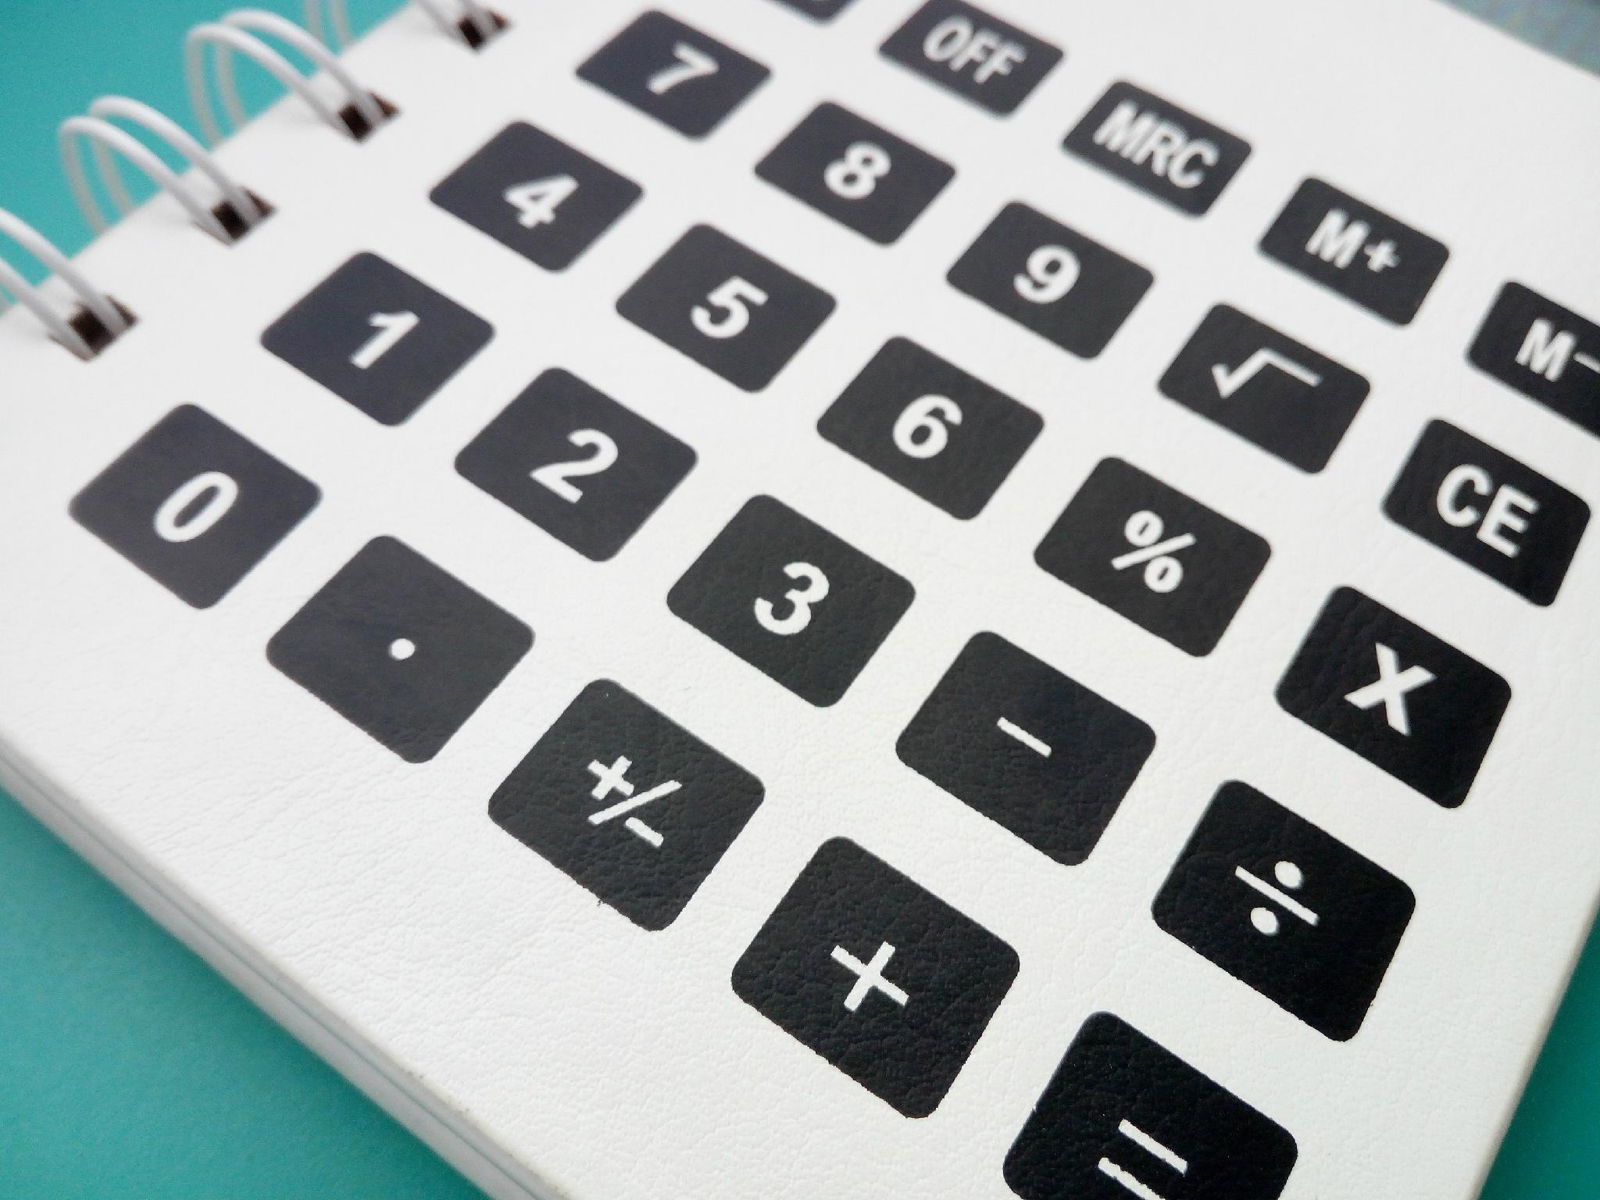 customerize Kraft & PU Leather notebook with calculator 4